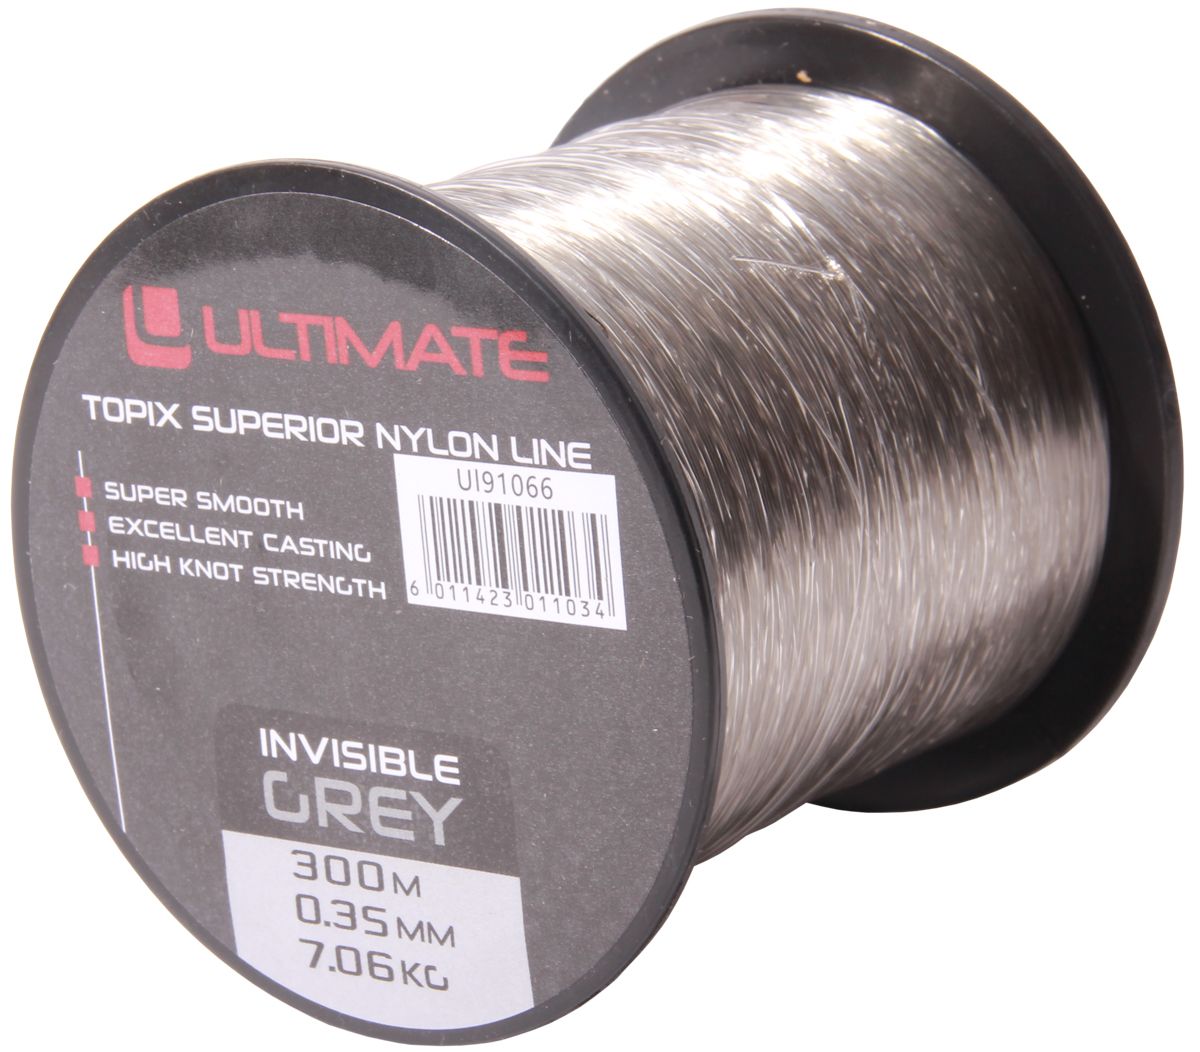 Ultimate Topix nylon invisible grey 300m 0,35mm 7,06kg